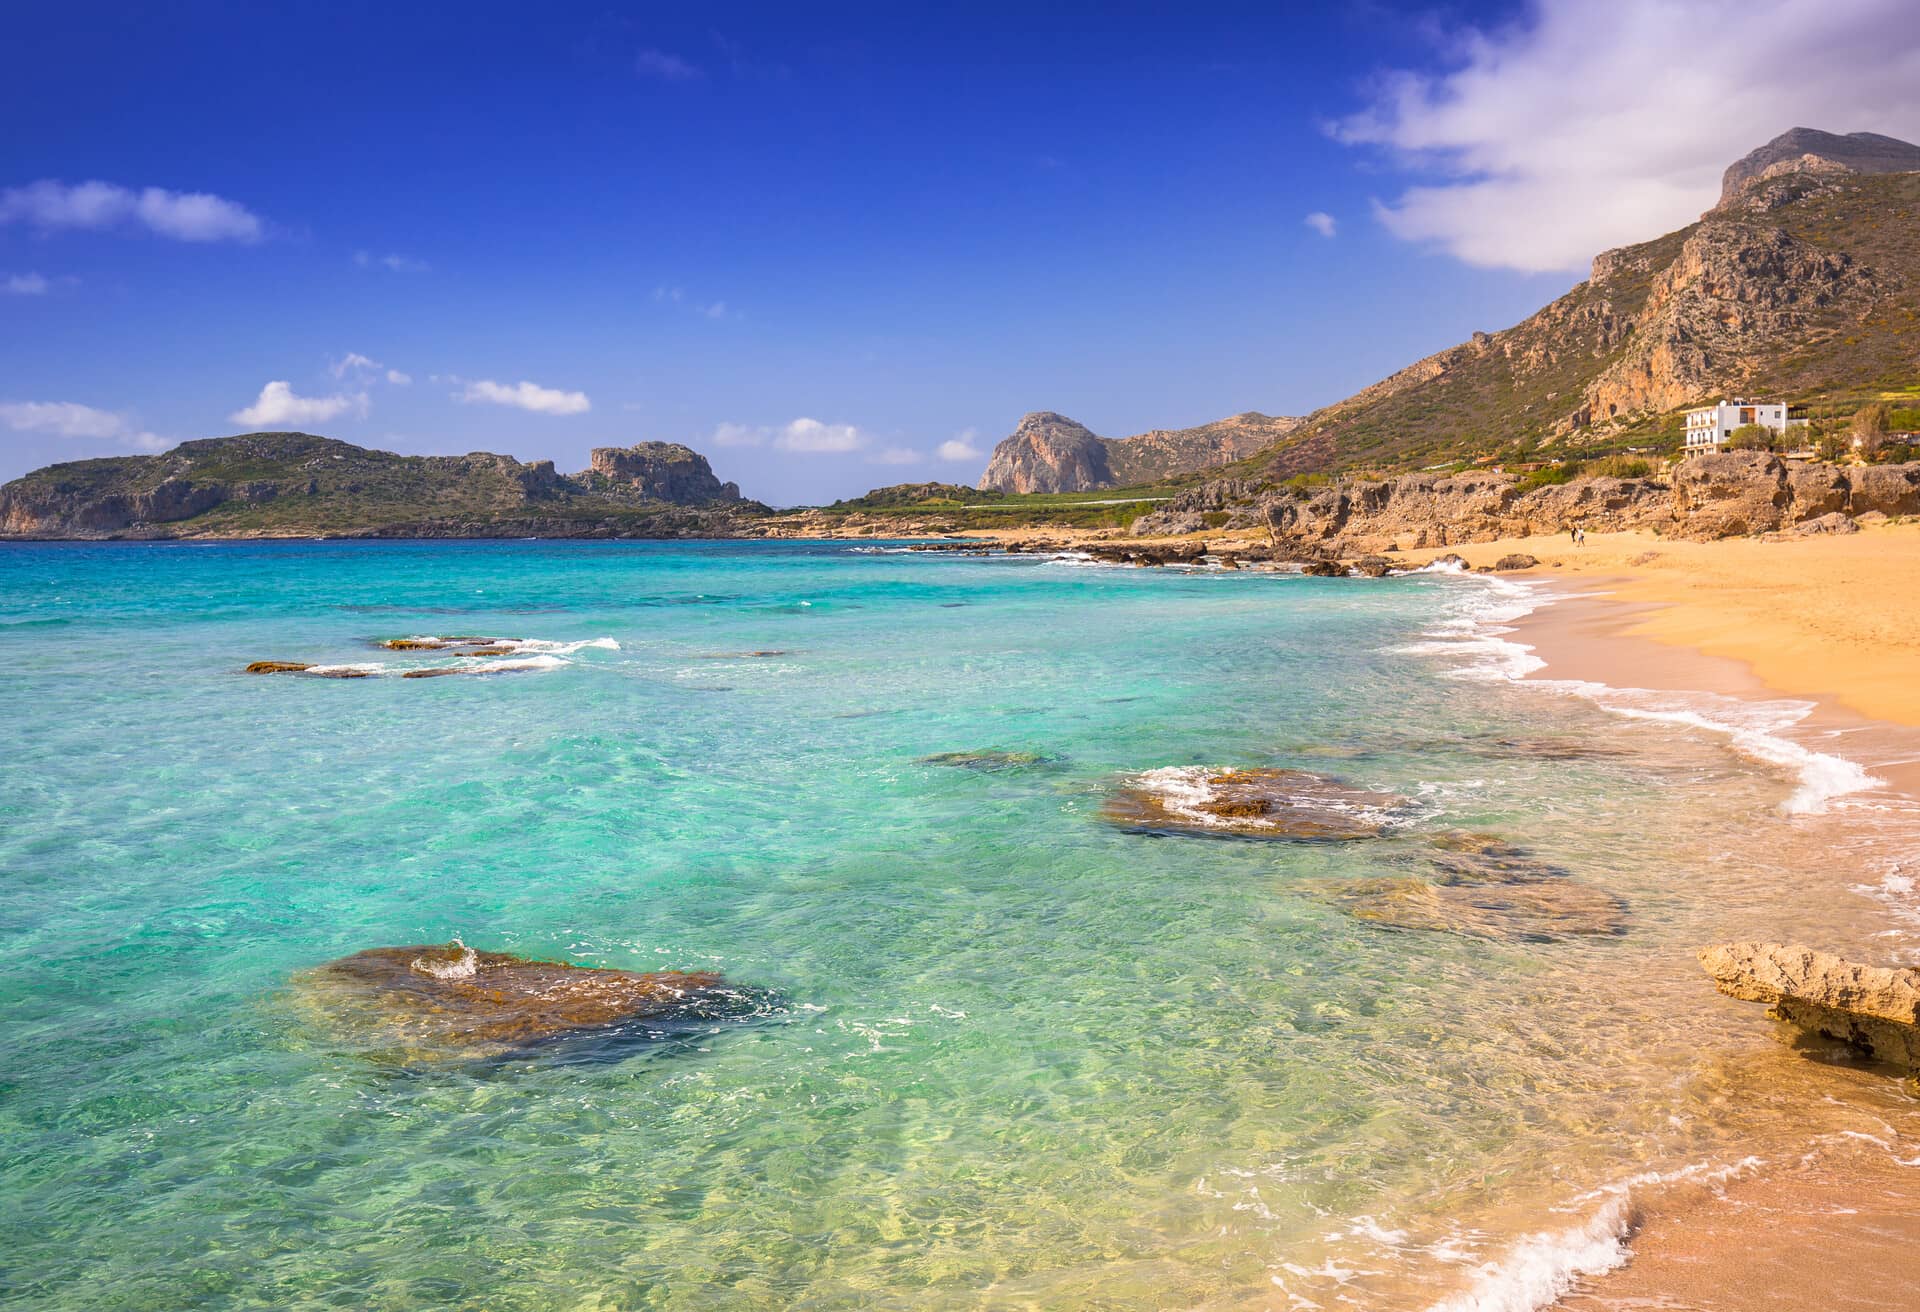 Kreta ist die beste Insel für einen Strandurlaub.